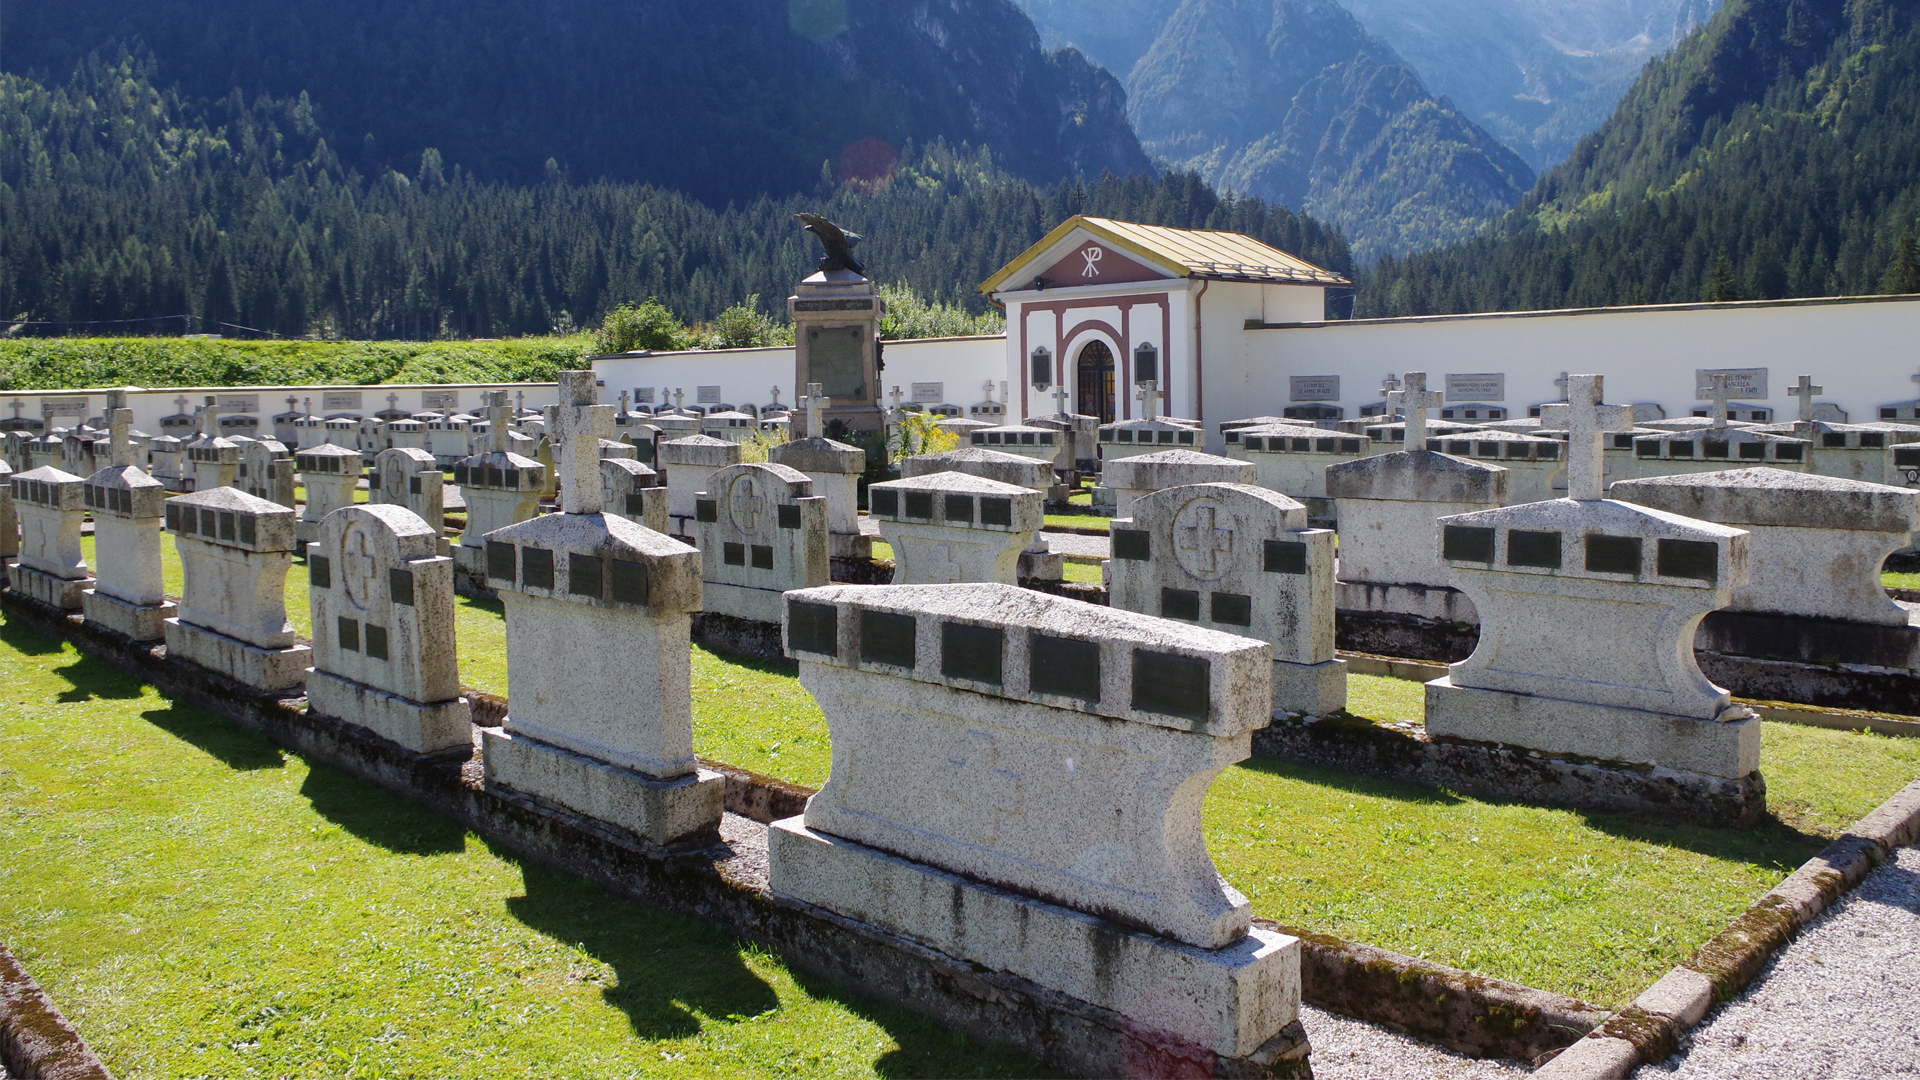 Cimitero Militare Monumentale “Adriano Lobetti Bodoni” (cimitero, monumentale) - Santo Stefano di Cadore (BL) 